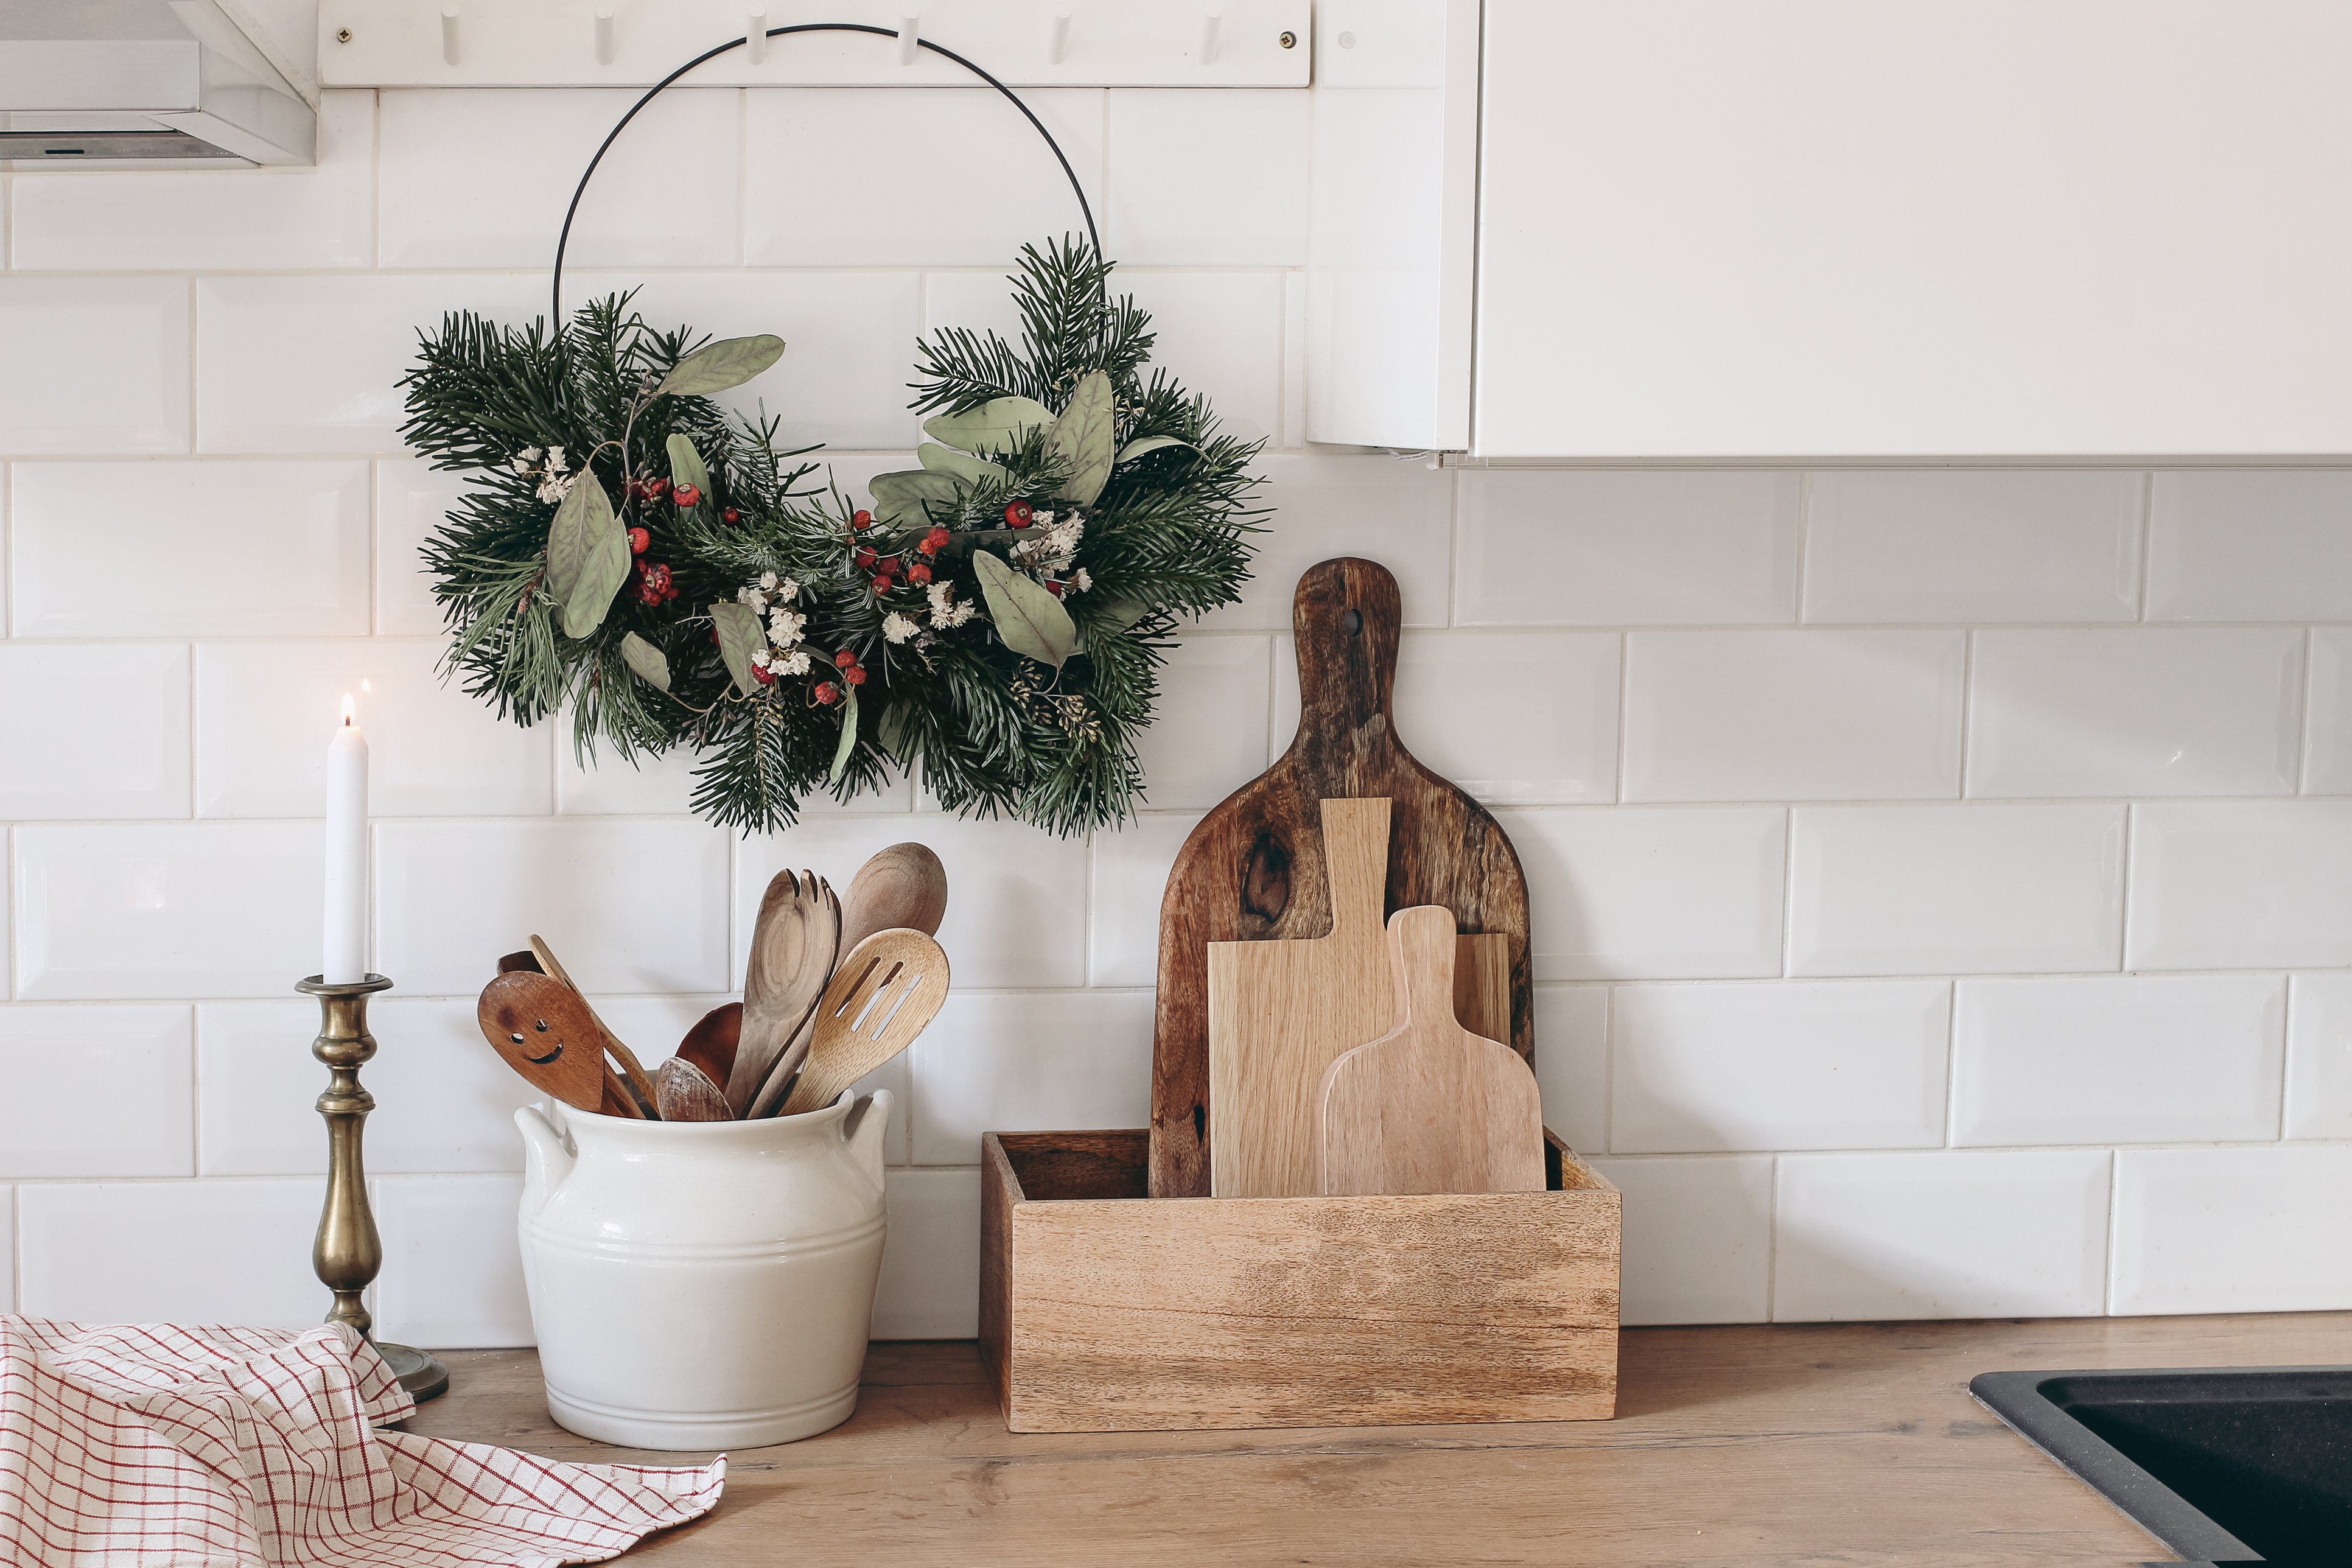 Χριστουγεννιάτικη διακόσμηση κουζίνας: 7+1 ιδέες για να τη στολίσετε με μοναδικό τρόπο και να “κλέψει” τις εντυπώσεις